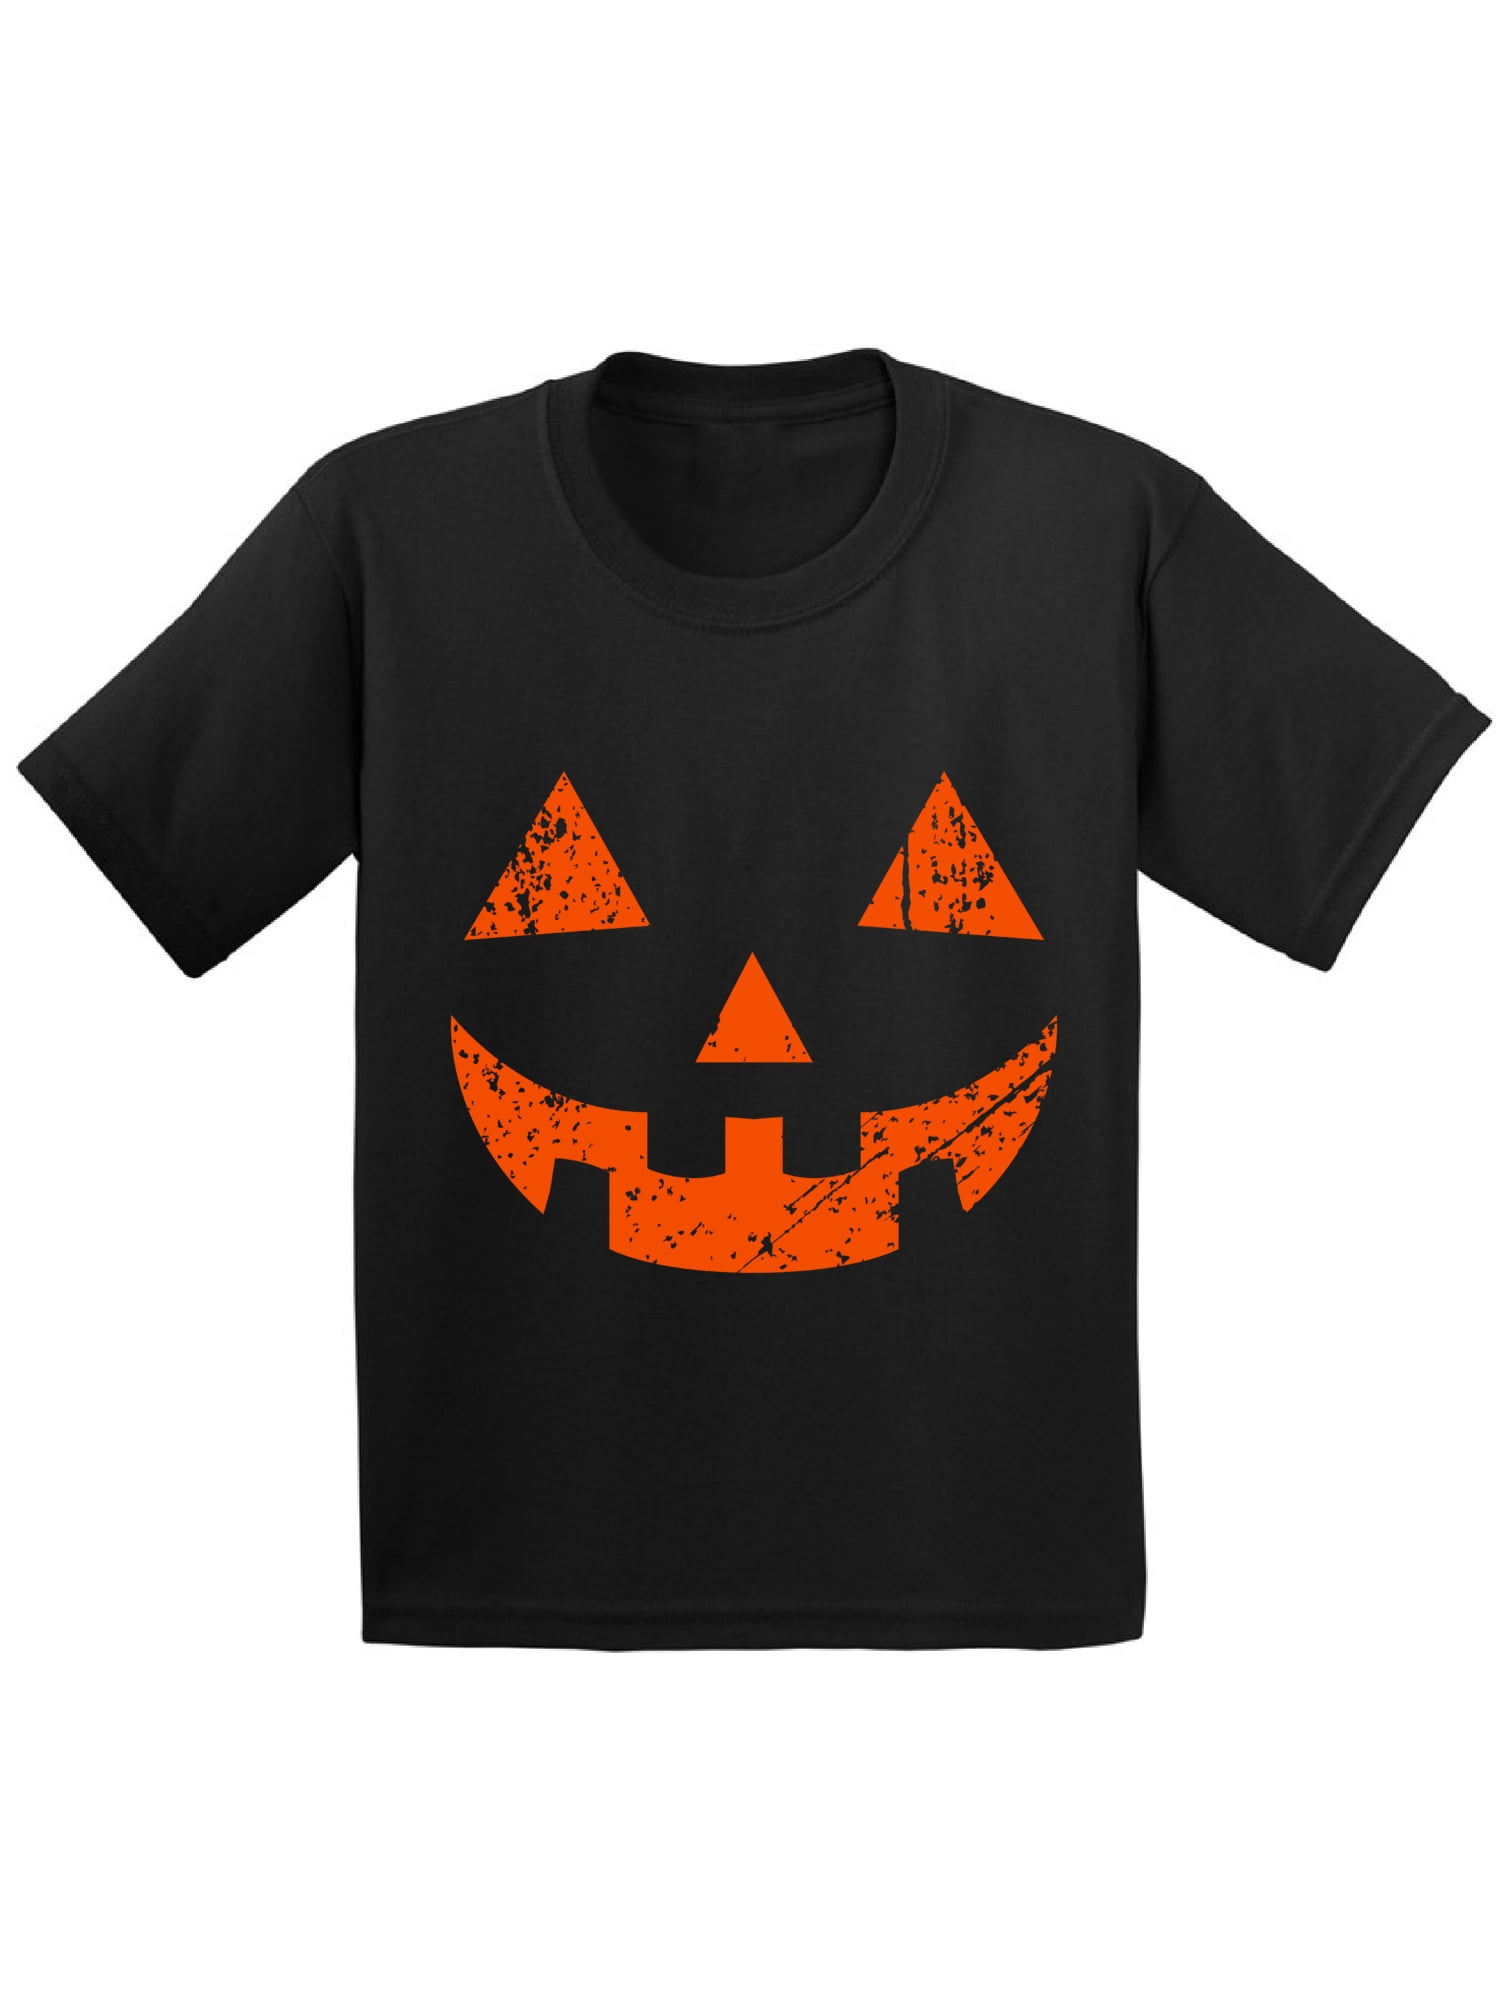 Halloween Shirt,Halloween Shirt for Woman,Funny Halloween Shirt,Hand Bra Shirt,Trick or Treat Shirt,Halloween Party Skeleton Hands Shirt